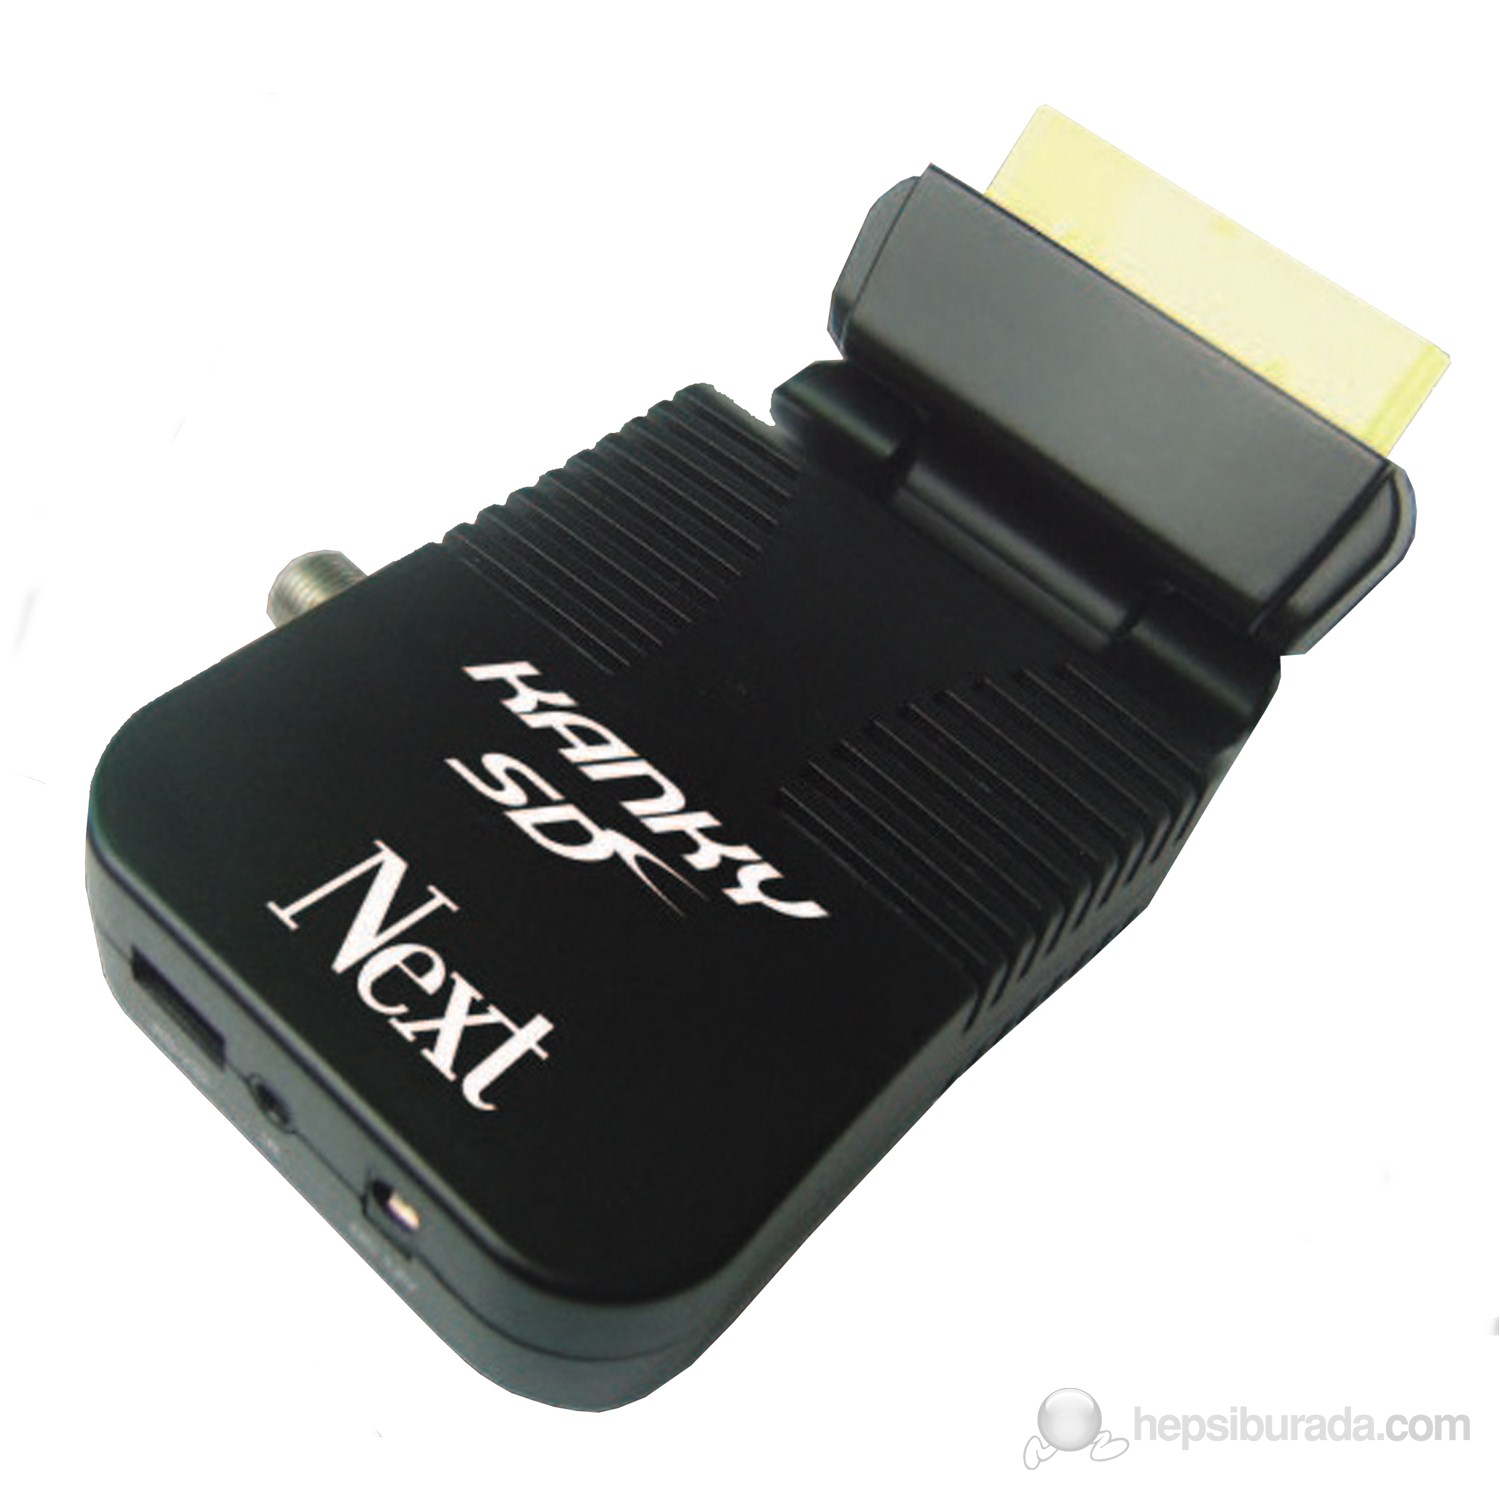 Next Minix Kanky Mini Uydu Alıcısı